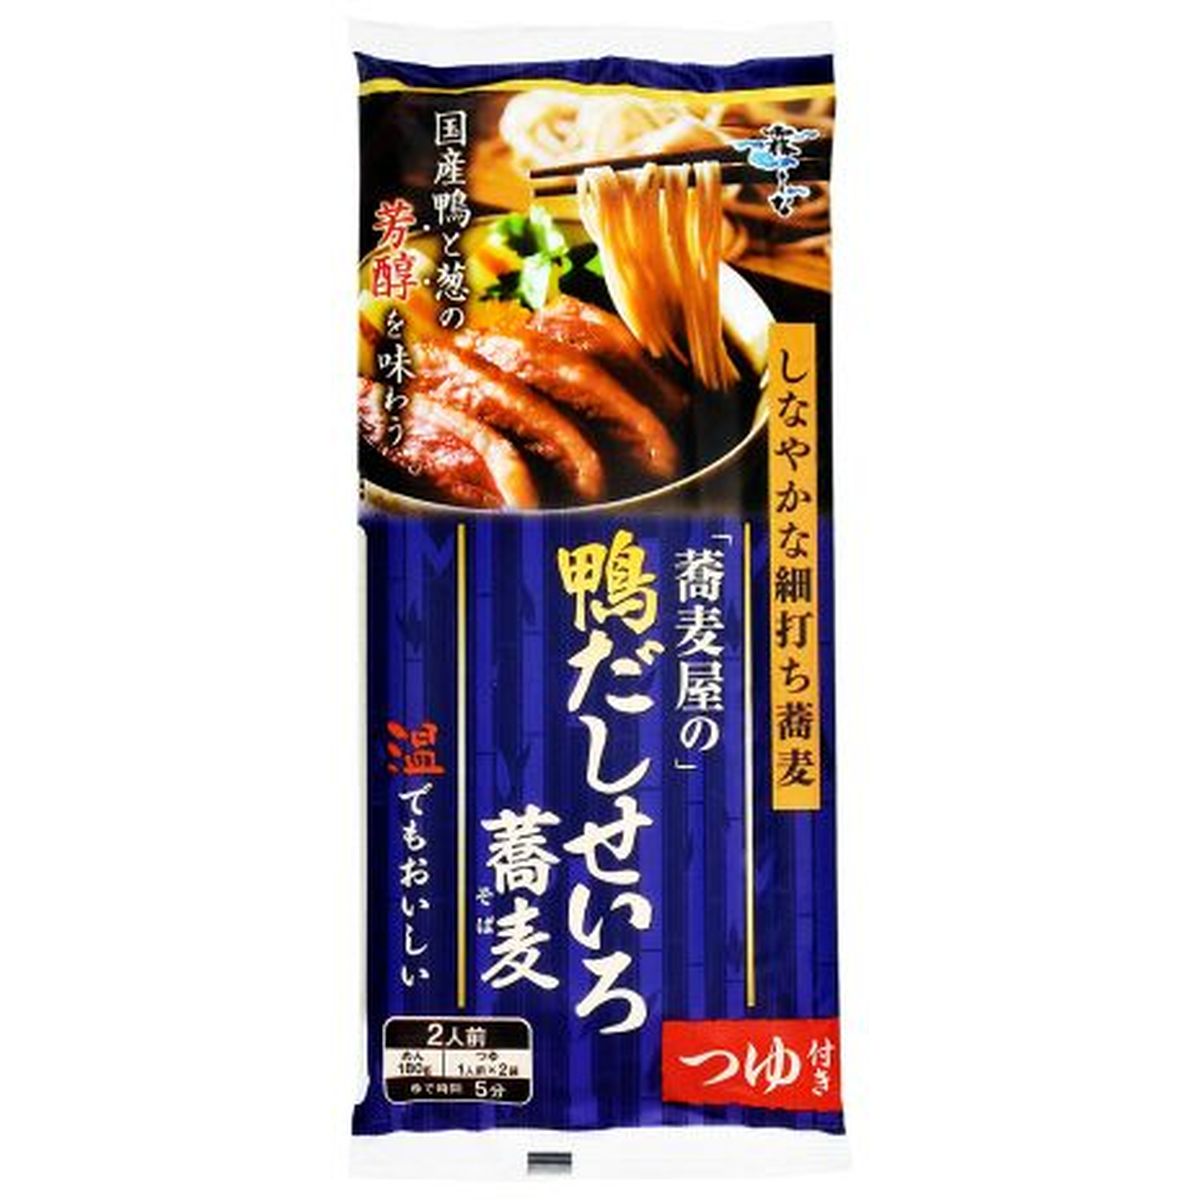 【10個入リ】ハクバク 蕎麦屋ノ鴨ダシセイロ蕎麦 250g